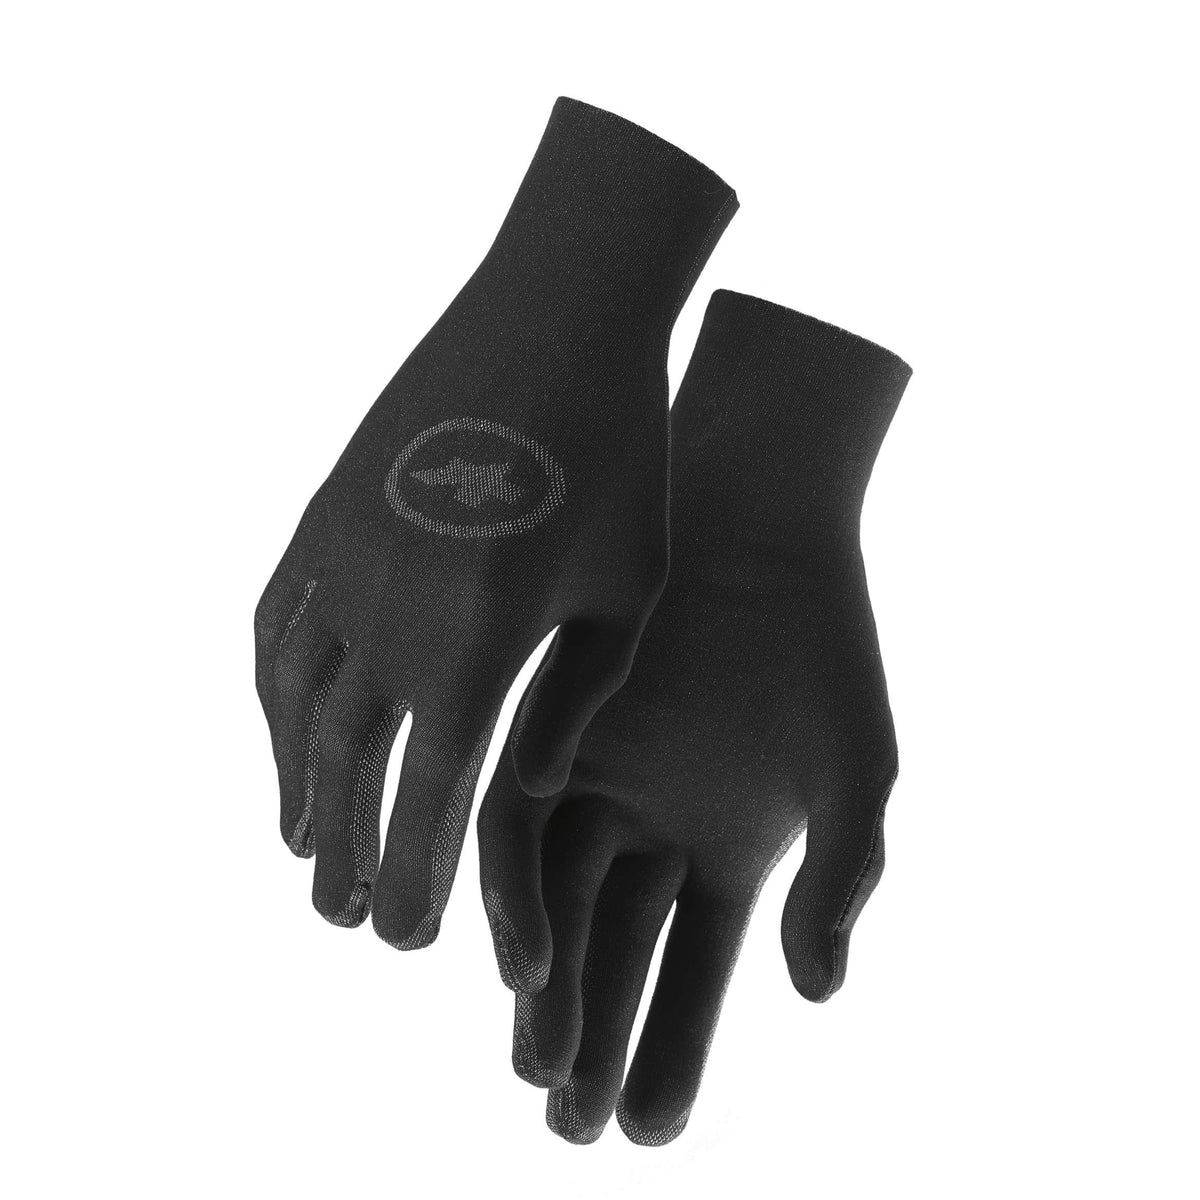 ASSOS Spring Fall Liner Gloves